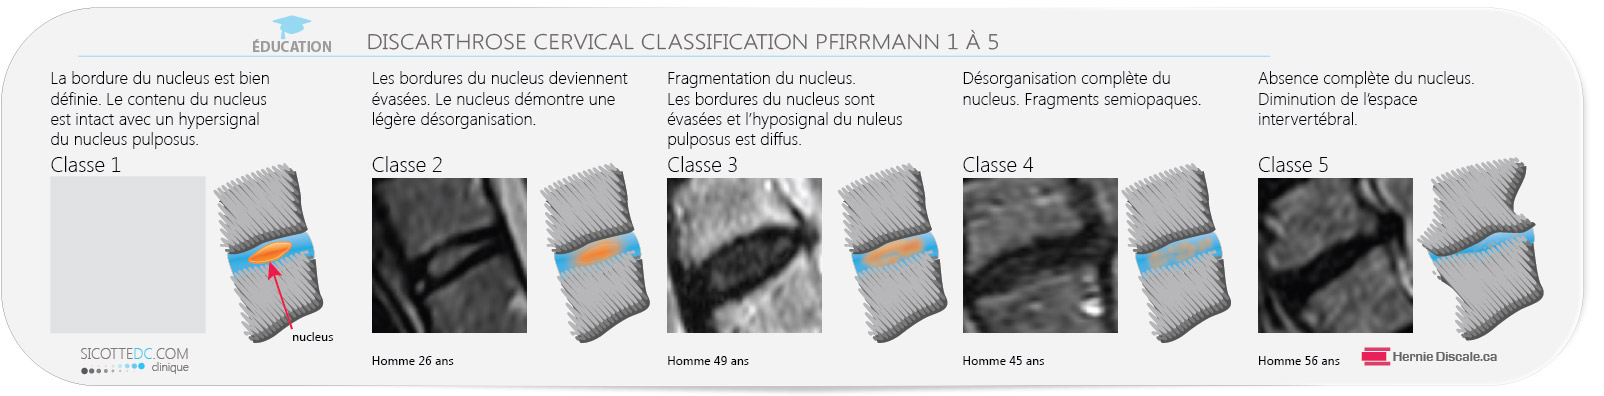 La classification Pfirrmann pour hernie discale cervicale.